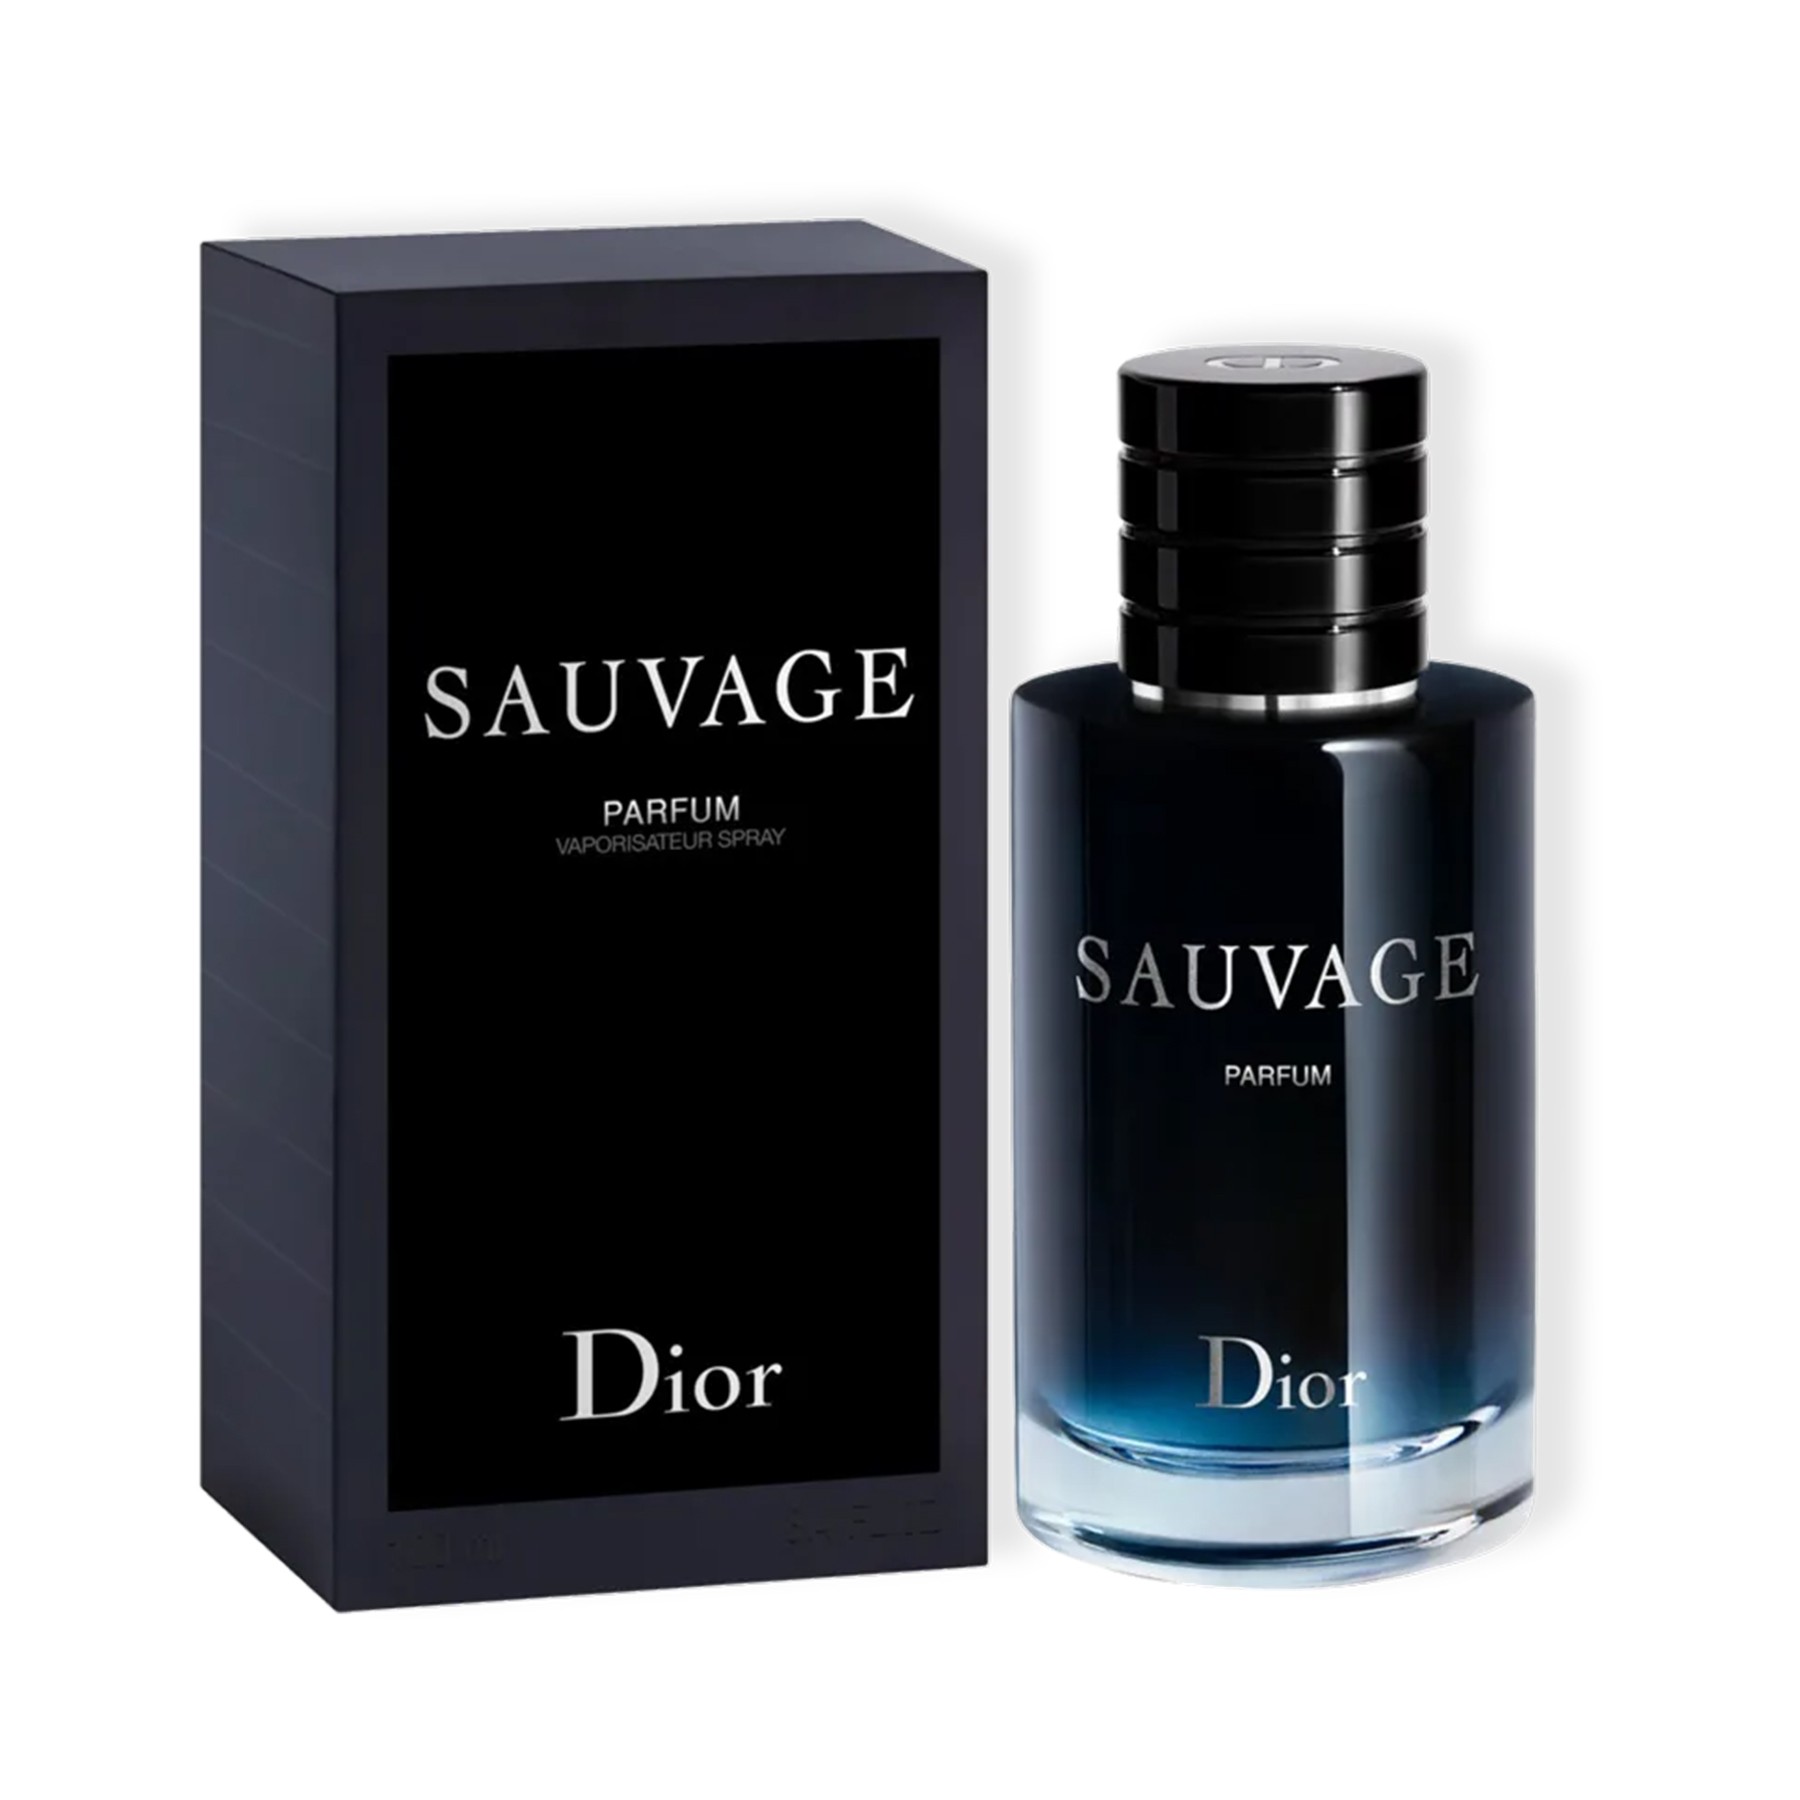 Perfume Sauvage Parfum: amadeirado, citrico e refilável